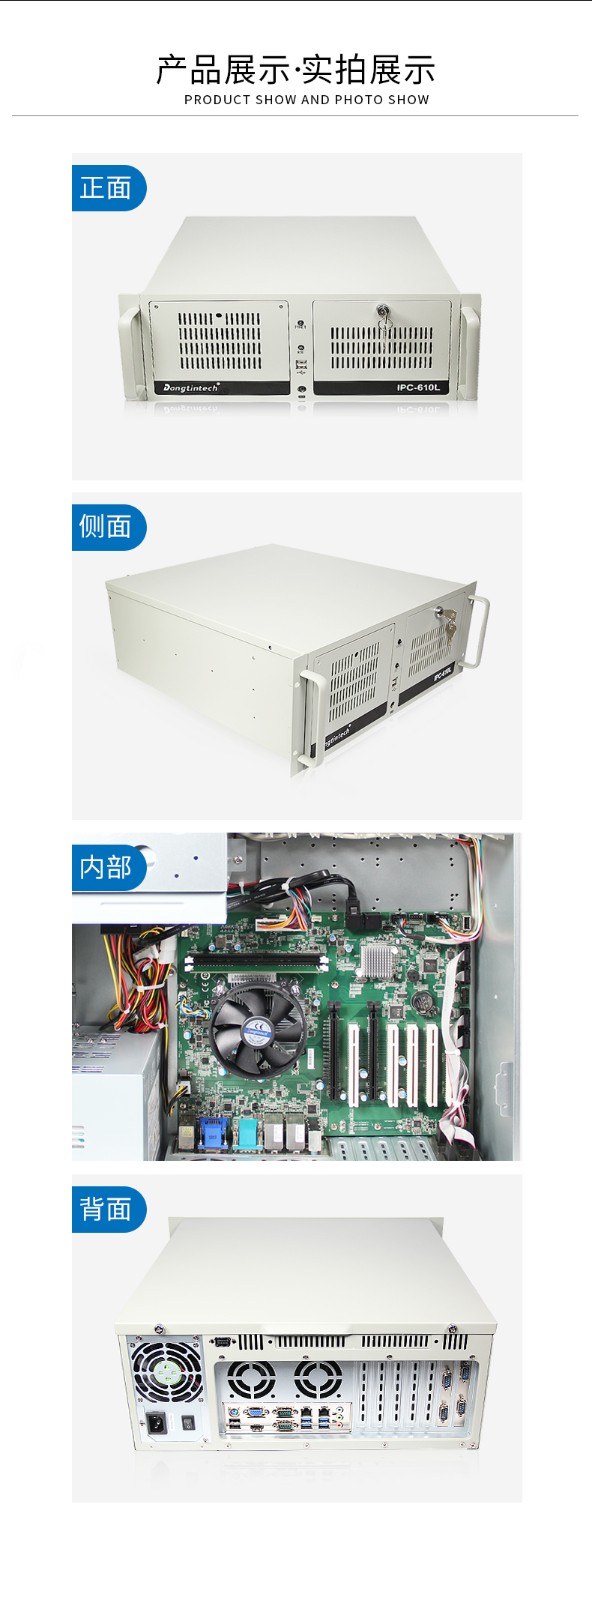 东田酷睿6代工业电脑,4U工控机,DT-610L-WH110MA.jpg